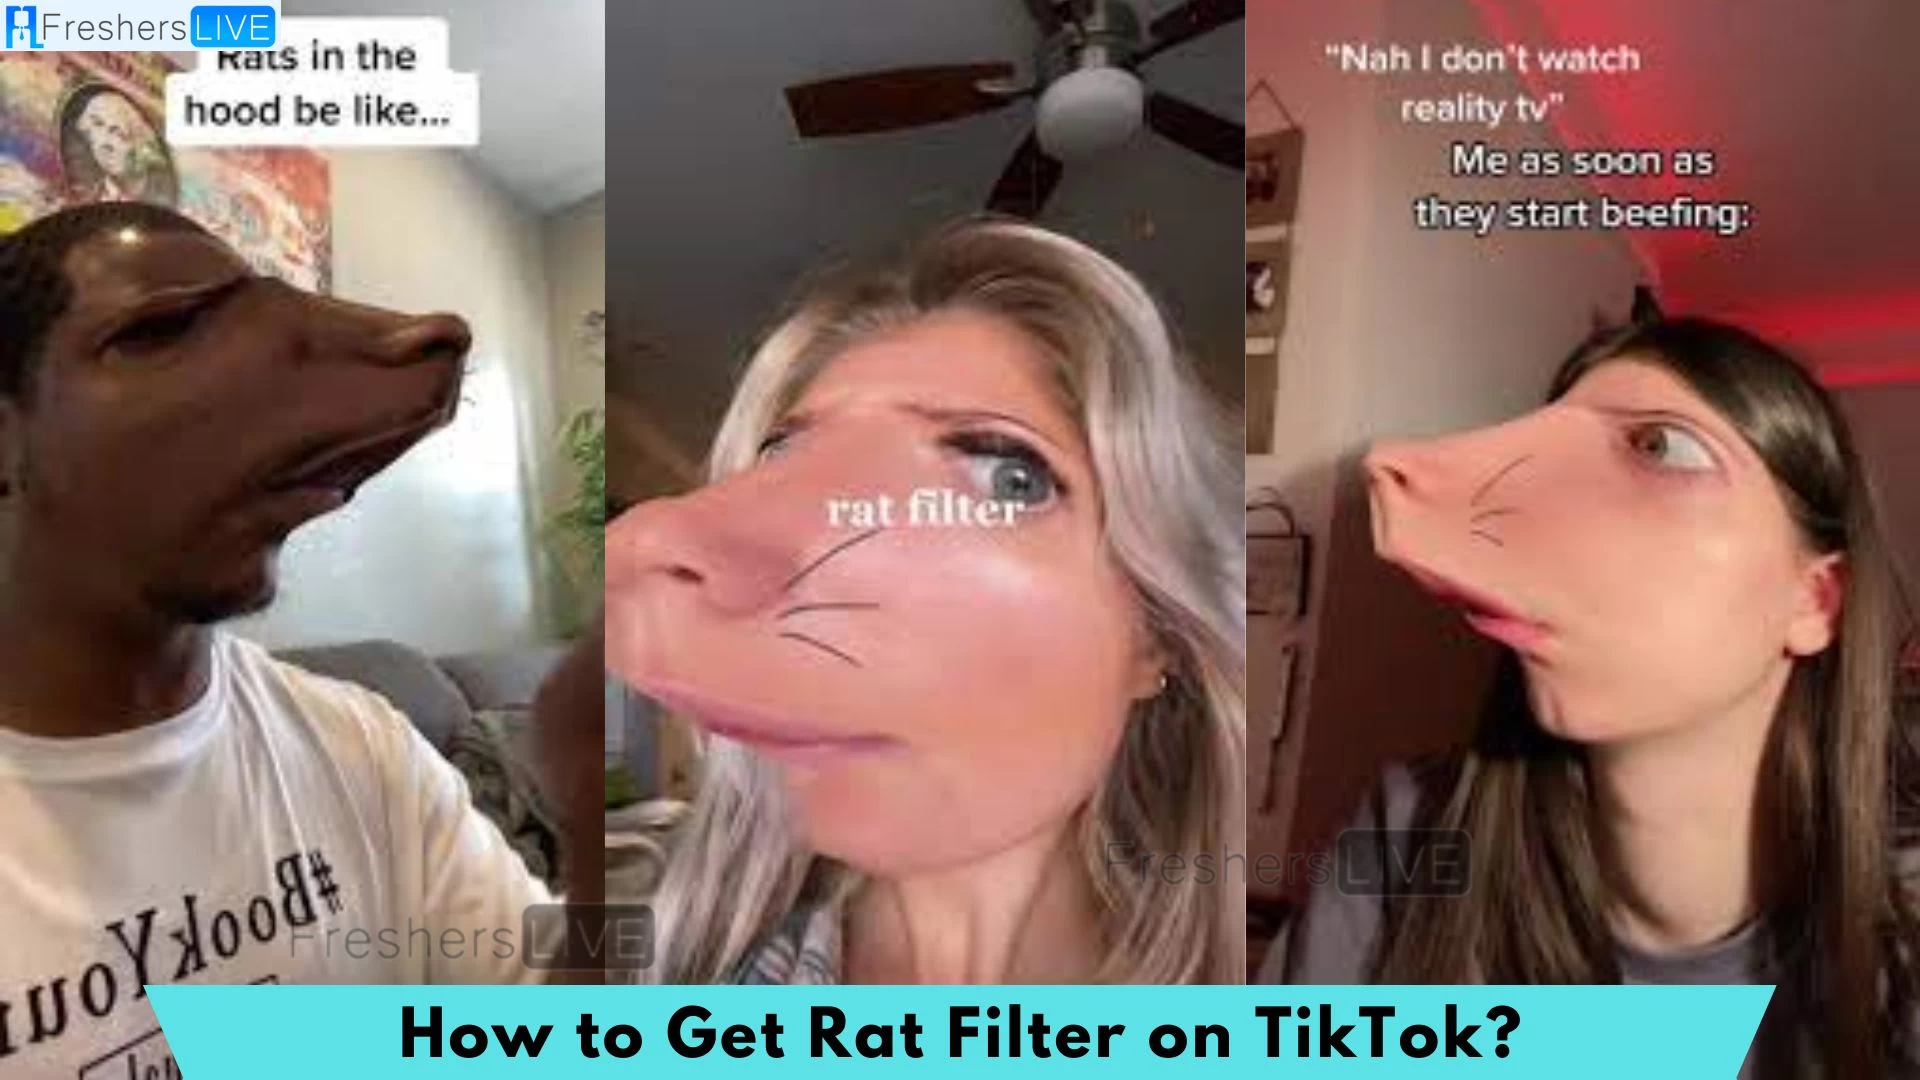 Filtro de ratas Tiktok, ¿Cómo obtener un filtro de ratas en Tiktok?